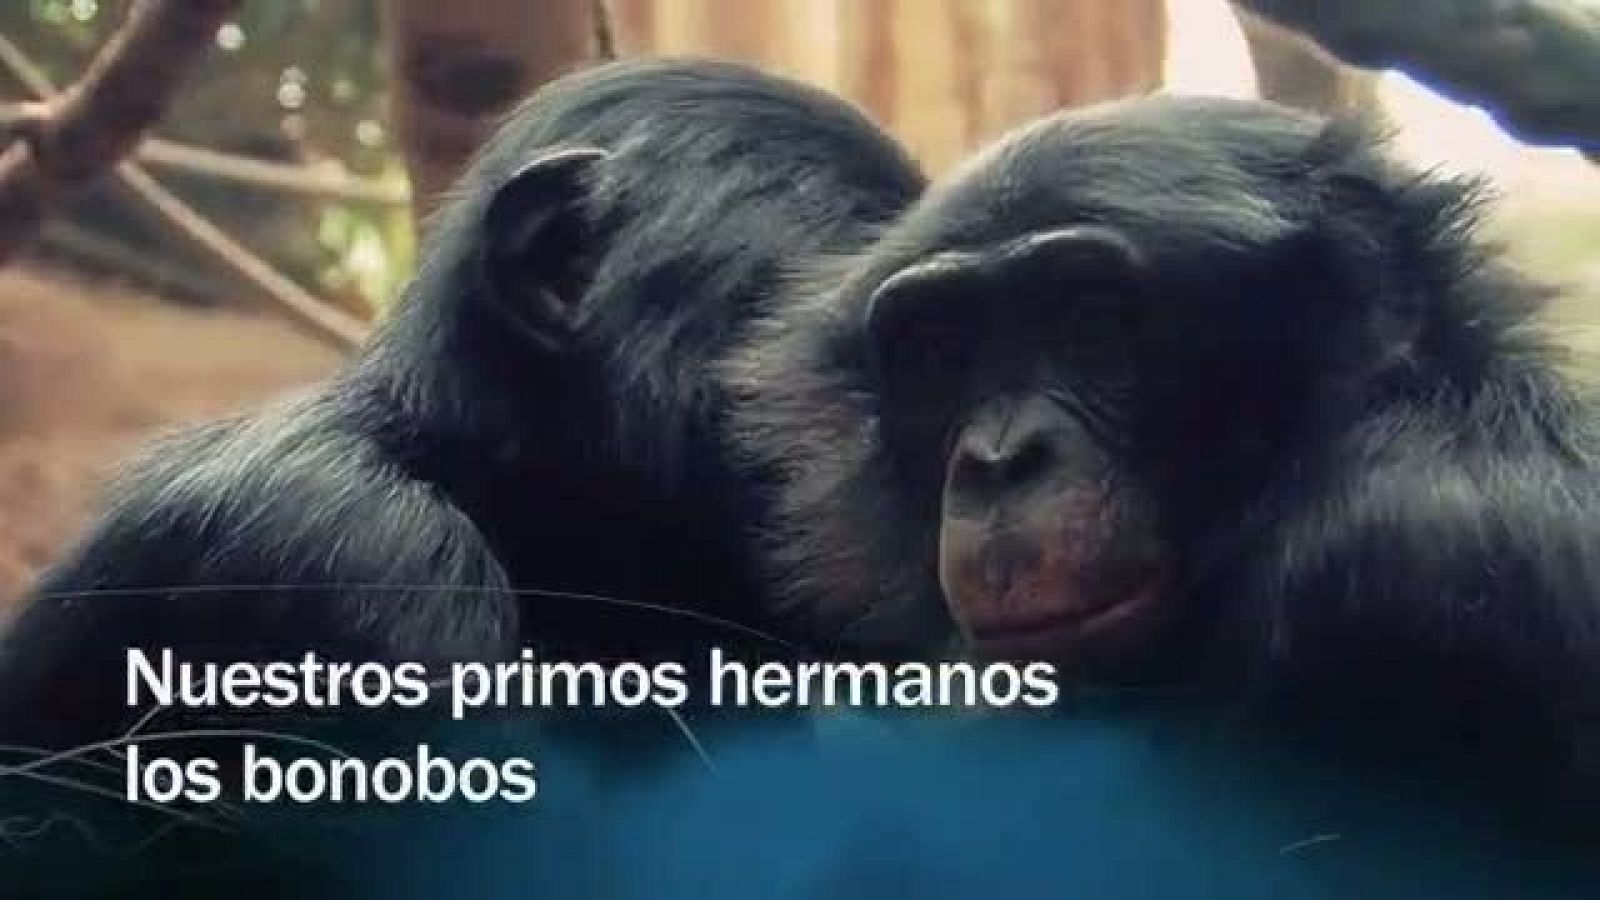 Redes - Nuestros primos hermanos los bonobos - avance